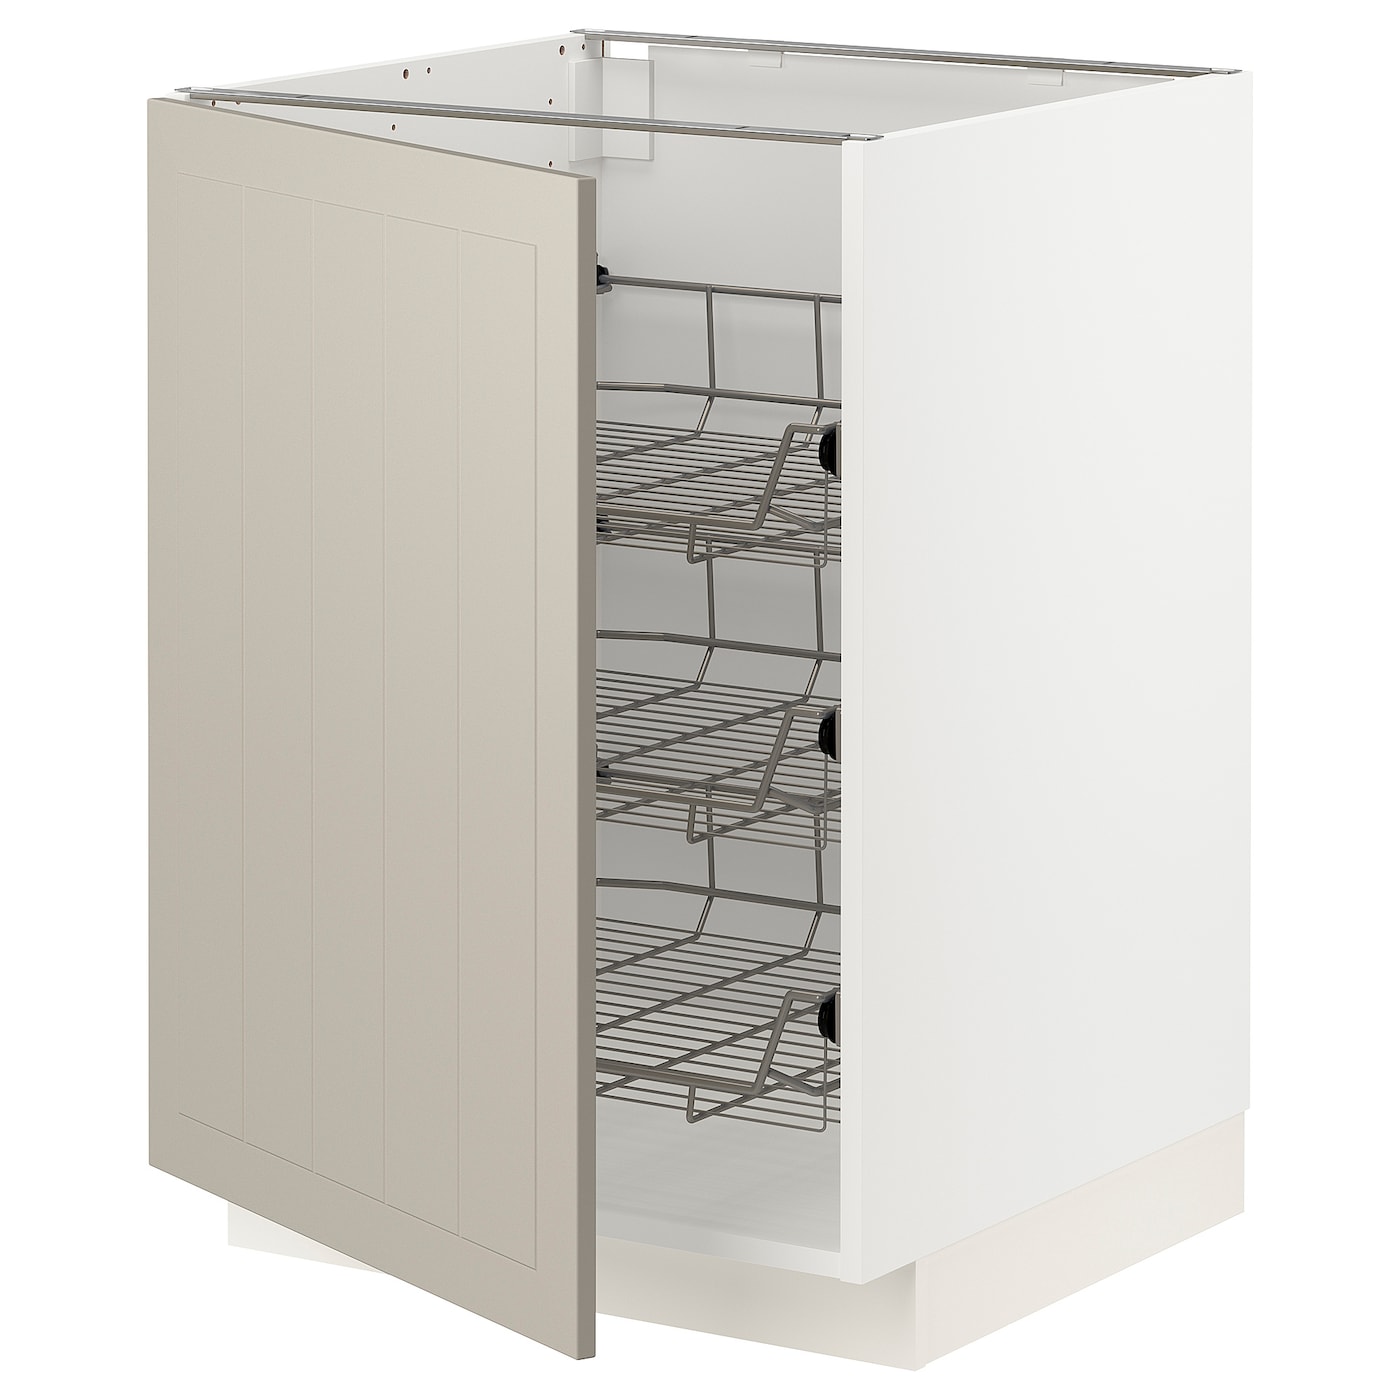 Напольный кухонный шкаф  - IKEA METOD, 88x62x60см, белый/темно-бежевый, МЕТОД ИКЕА